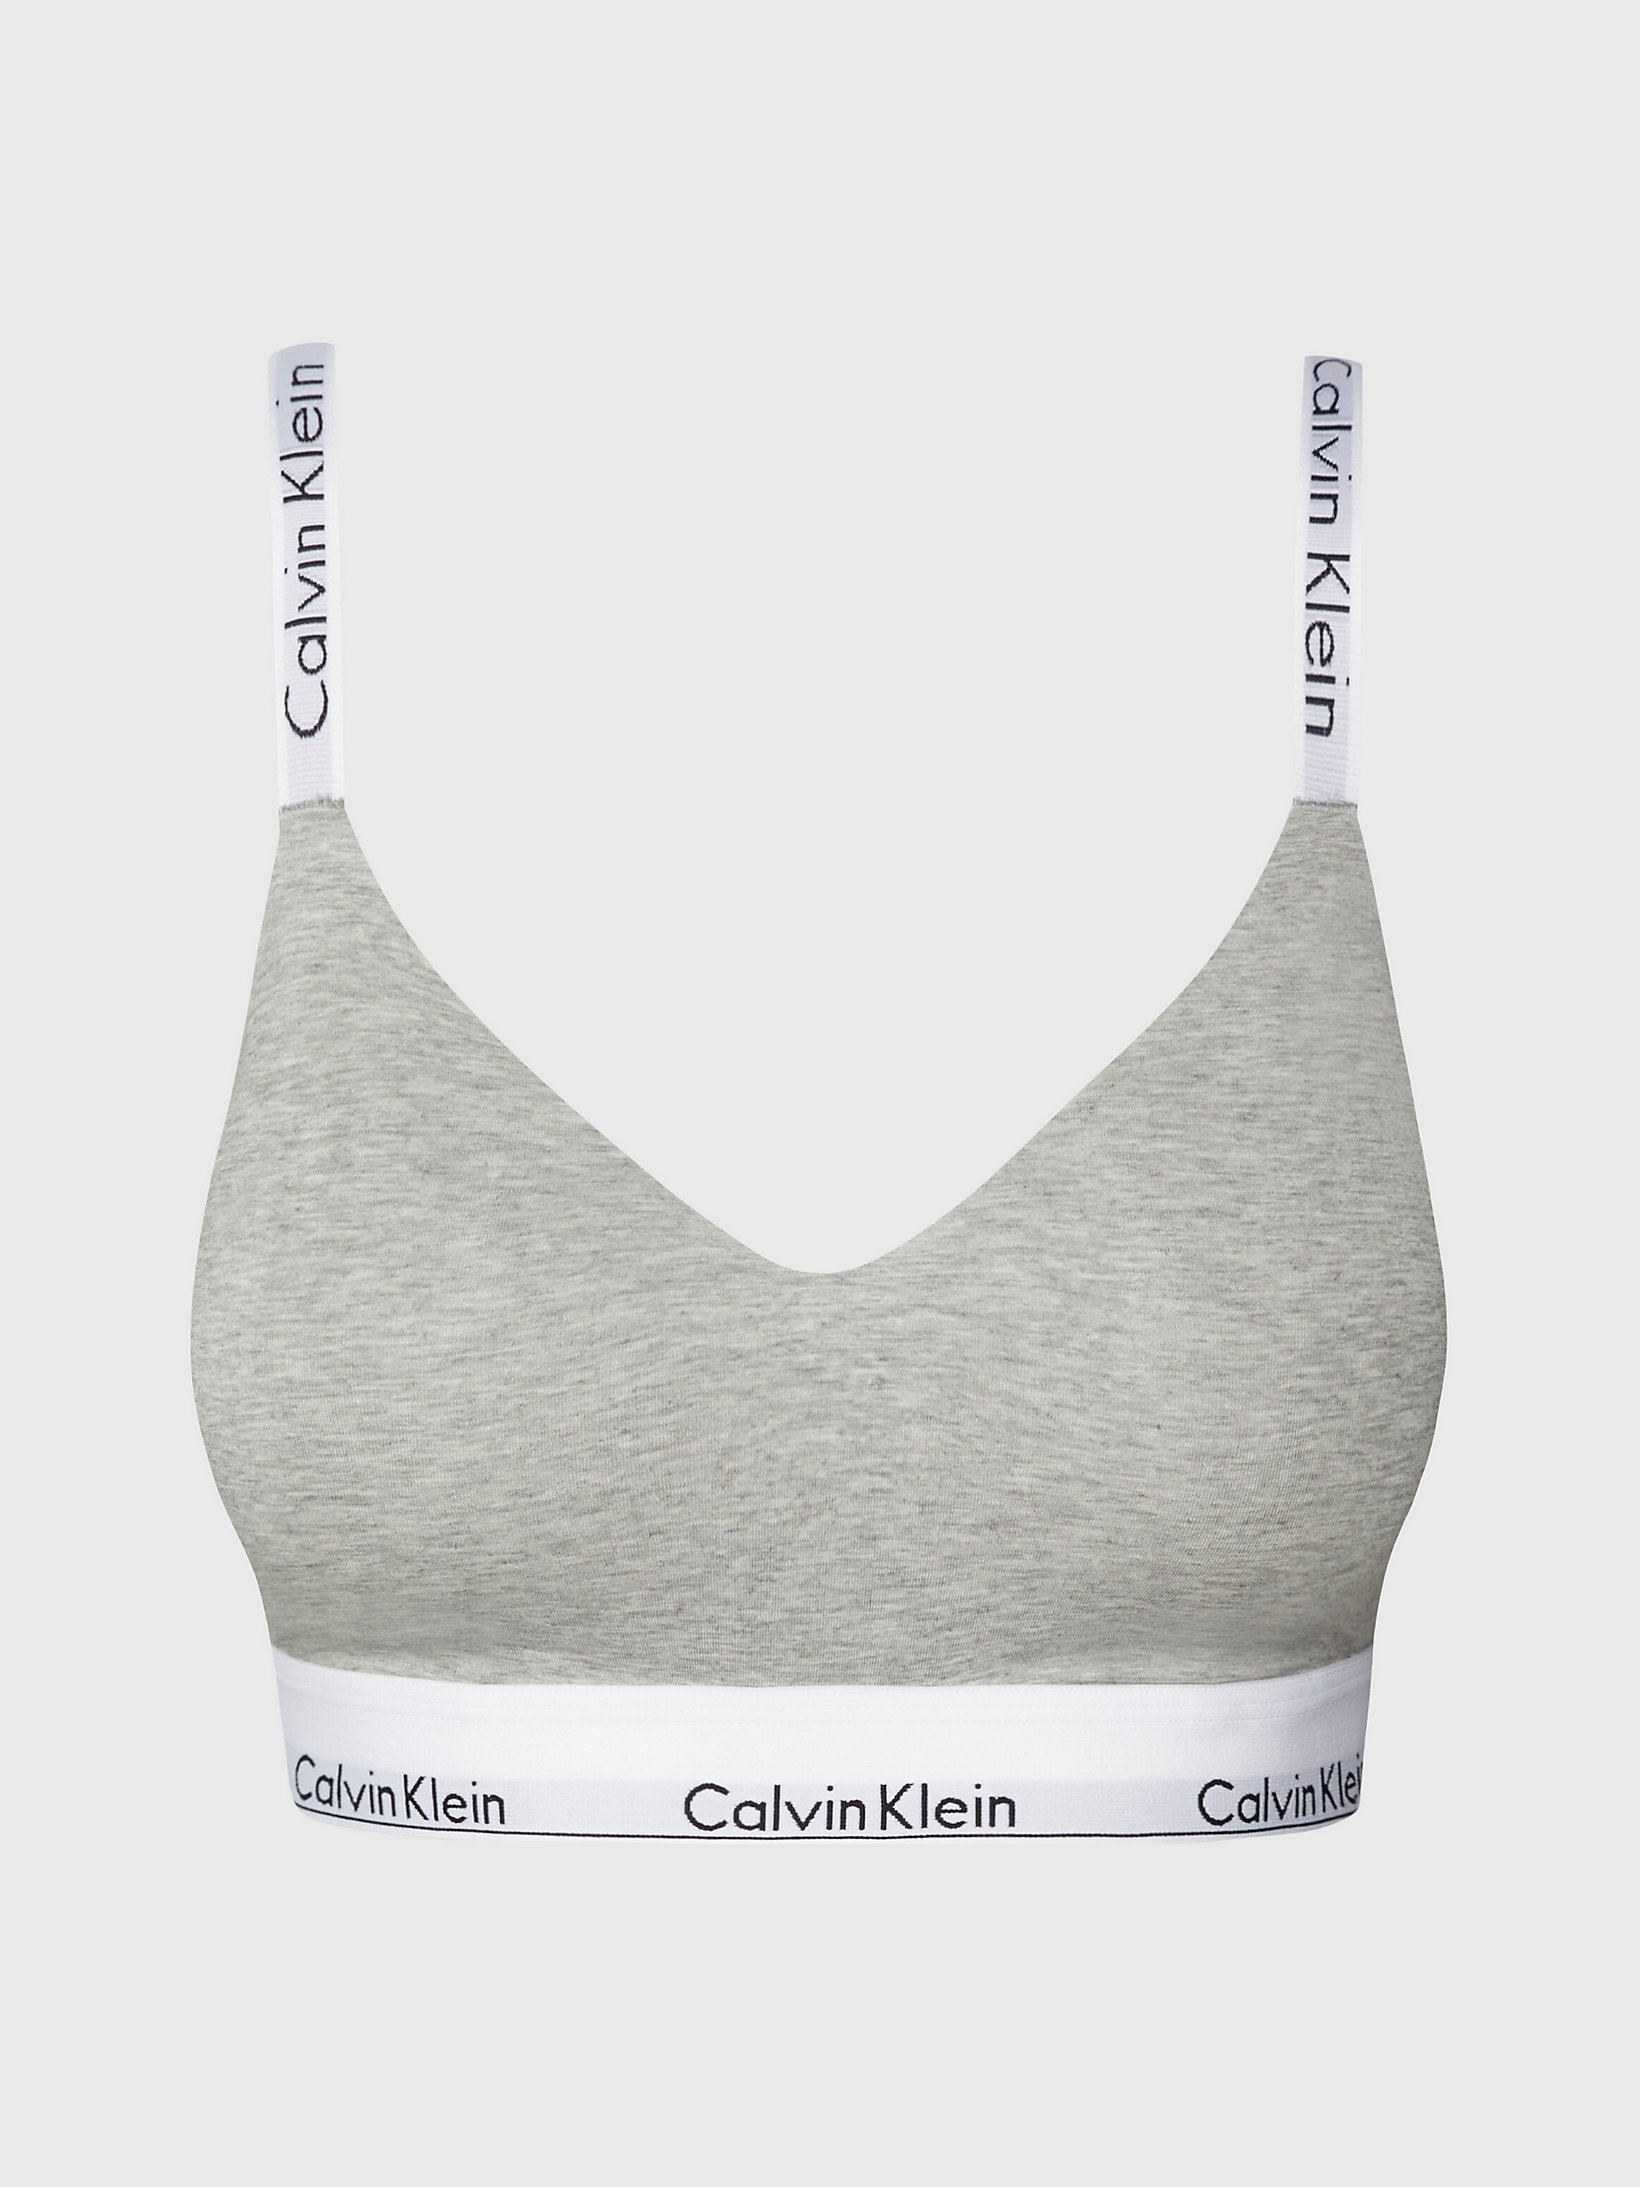 Grey Heather > Voll-Cup-Bralette – Modern Cotton > undefined Damen - Calvin Klein